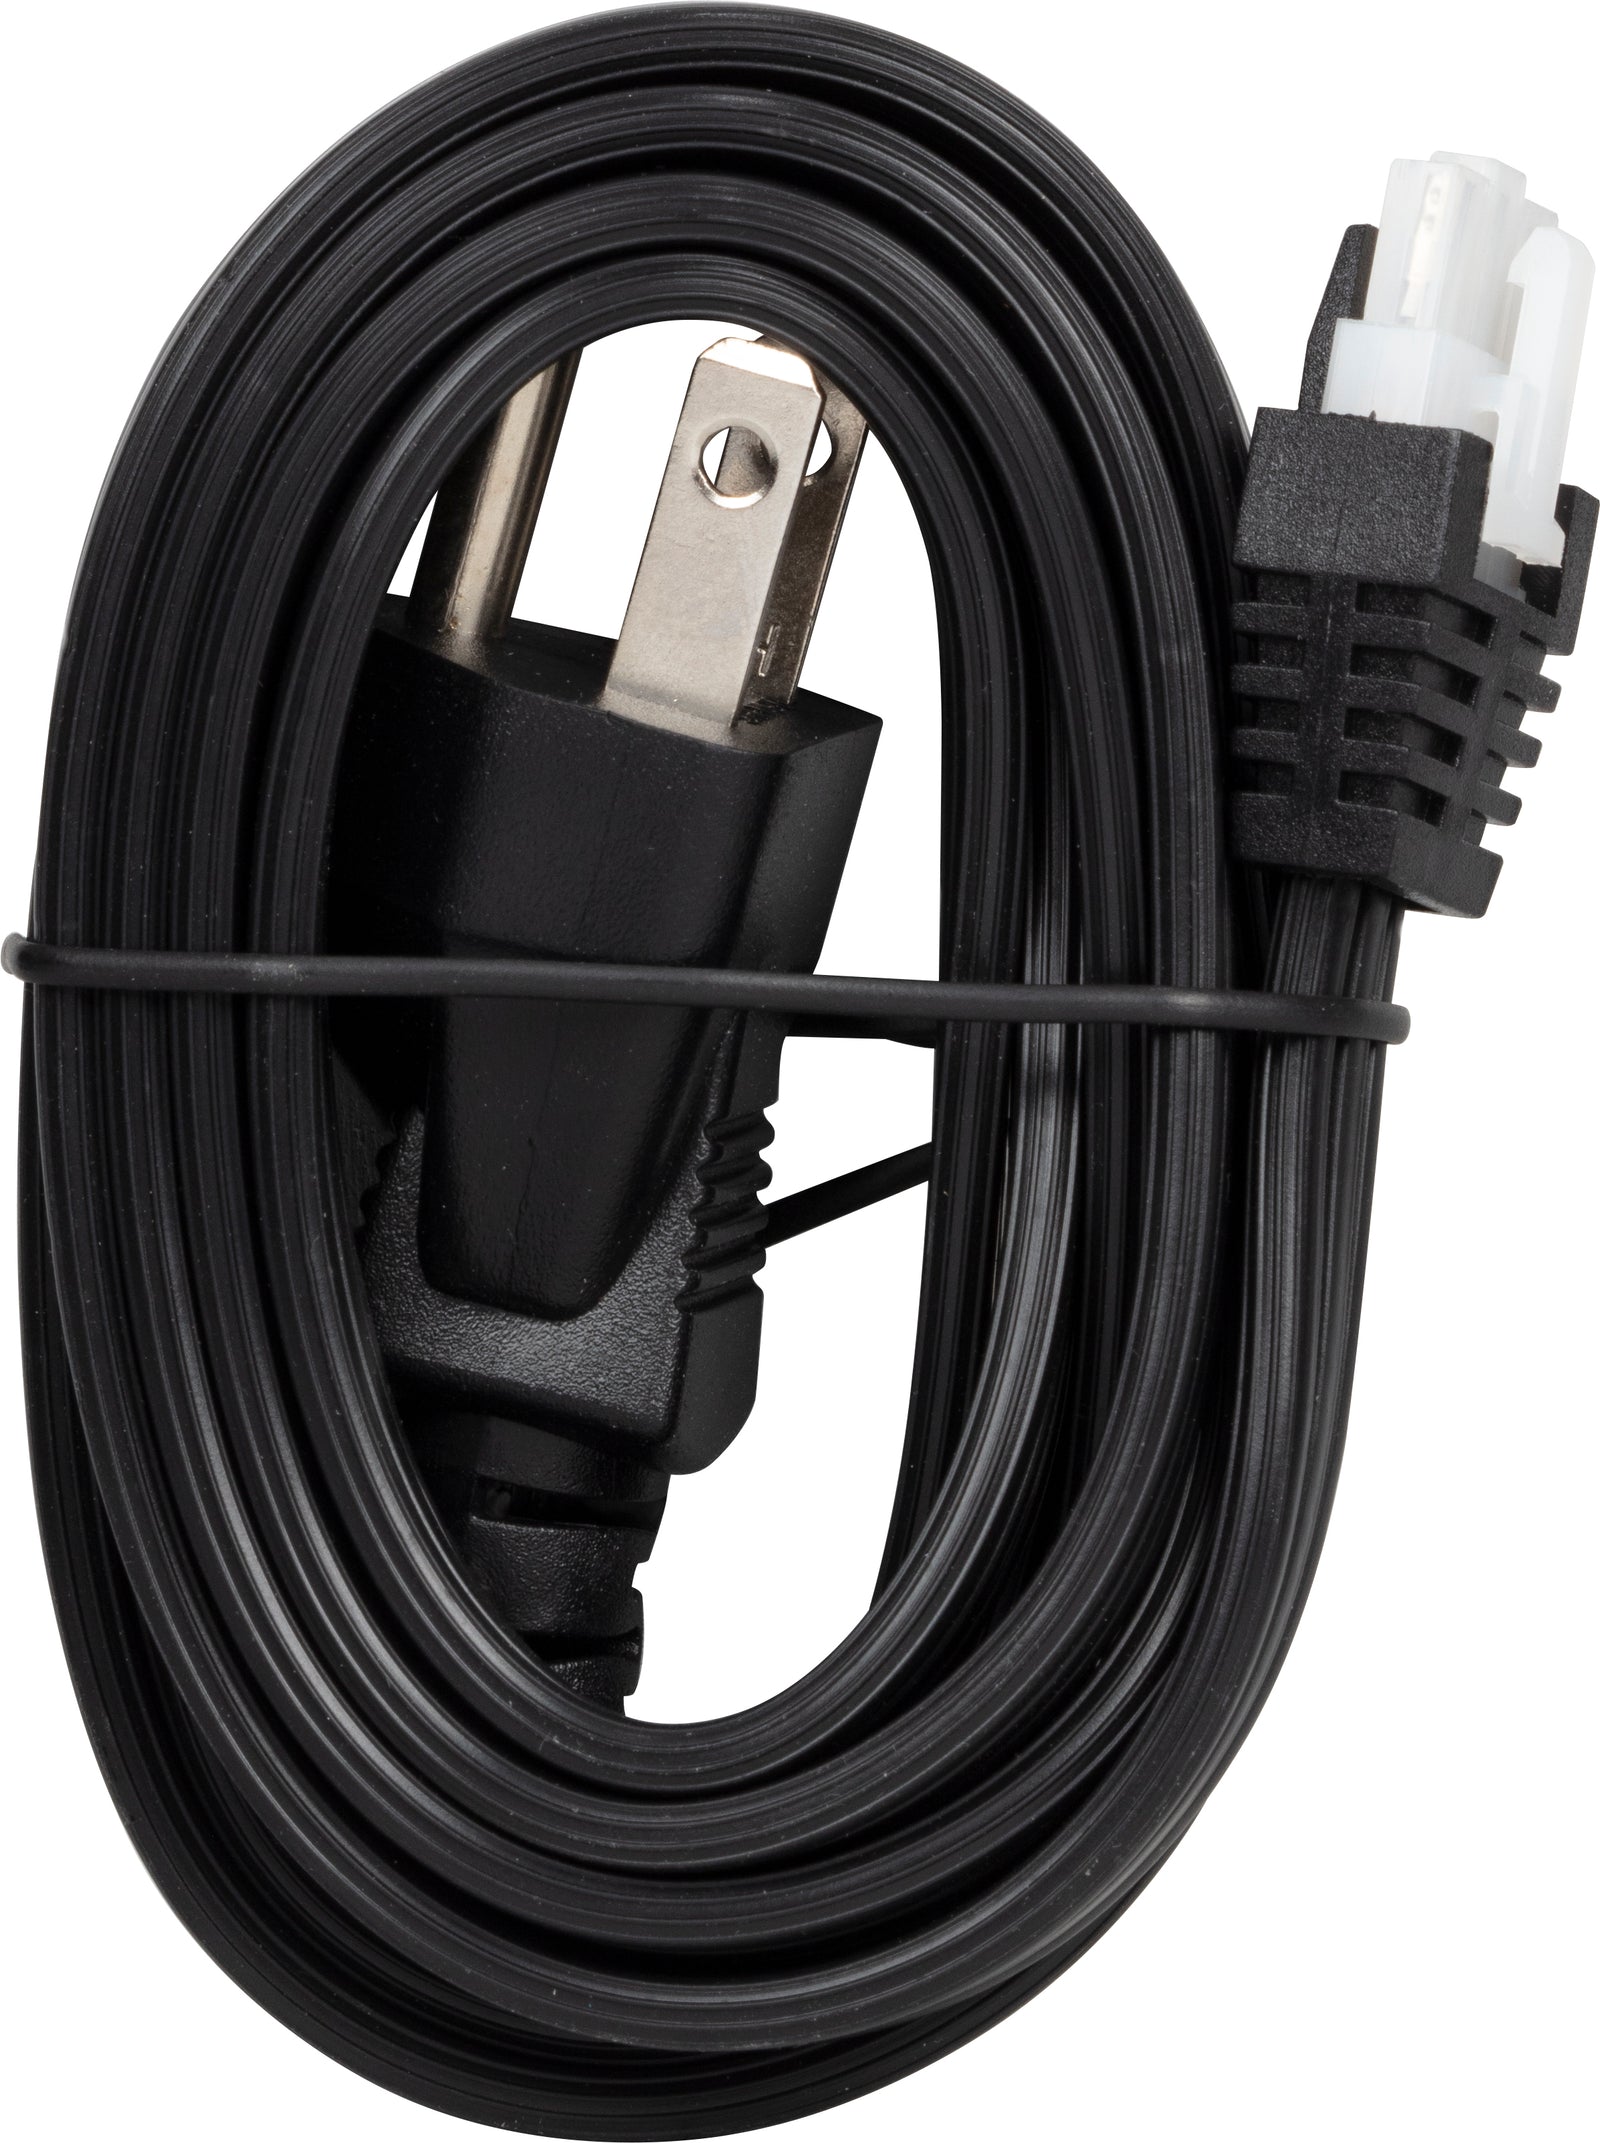 5 ft Plug Cable for 120V Bar Light, Black or White